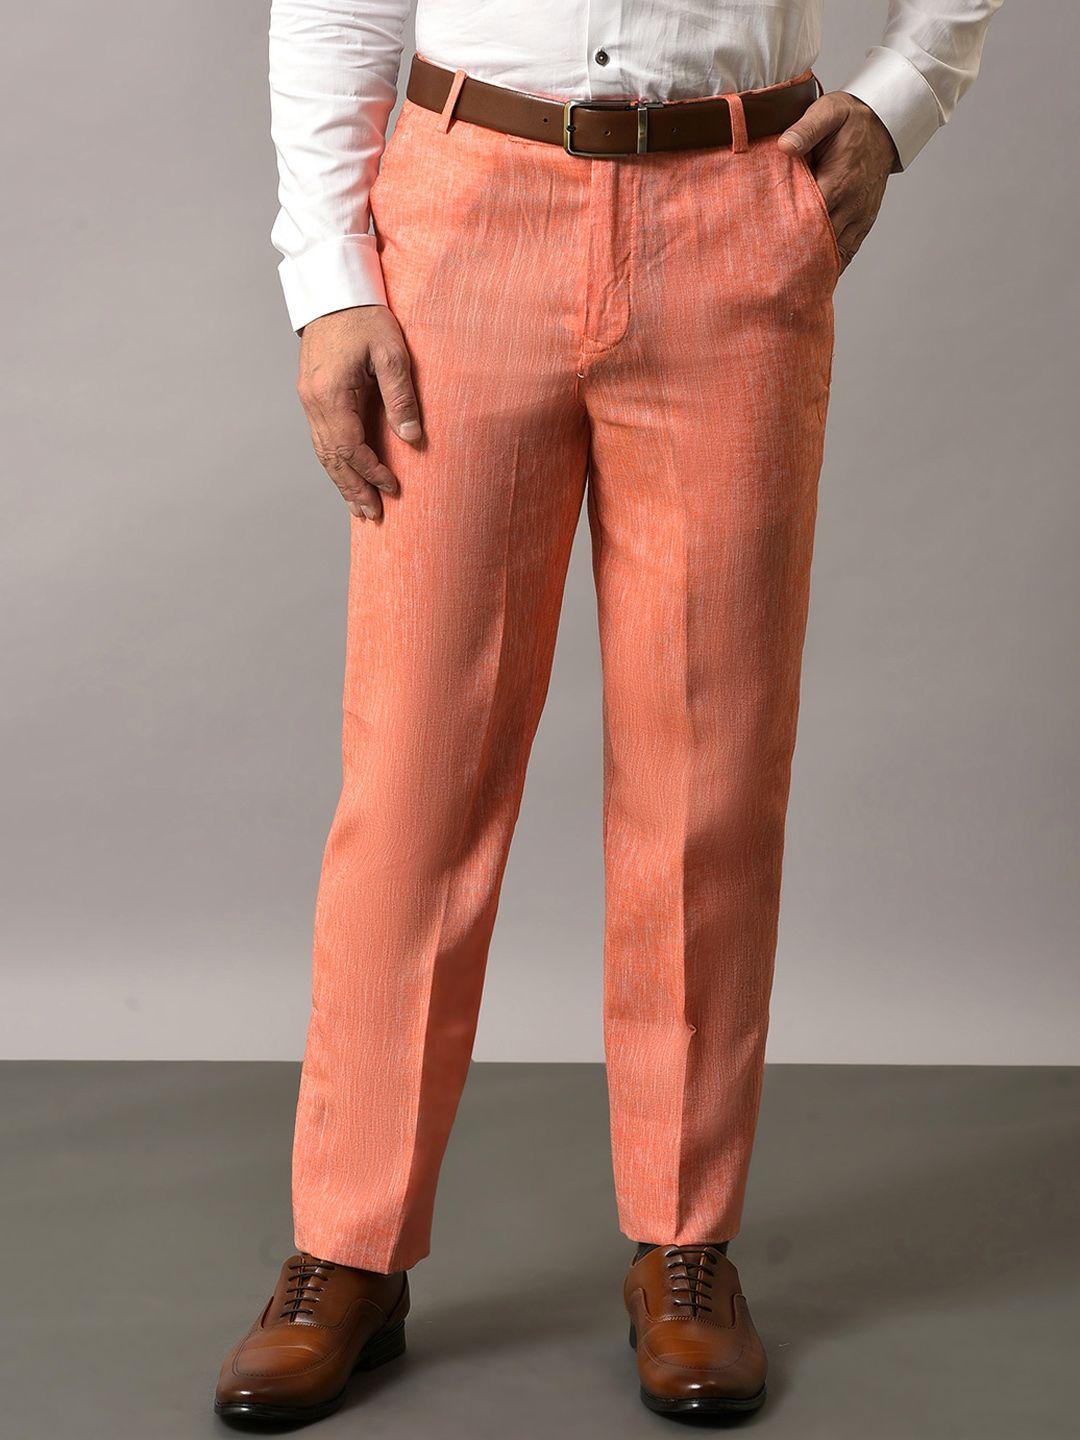 hangup-men-original-mid-rise-formal-cotton-linen-trousers